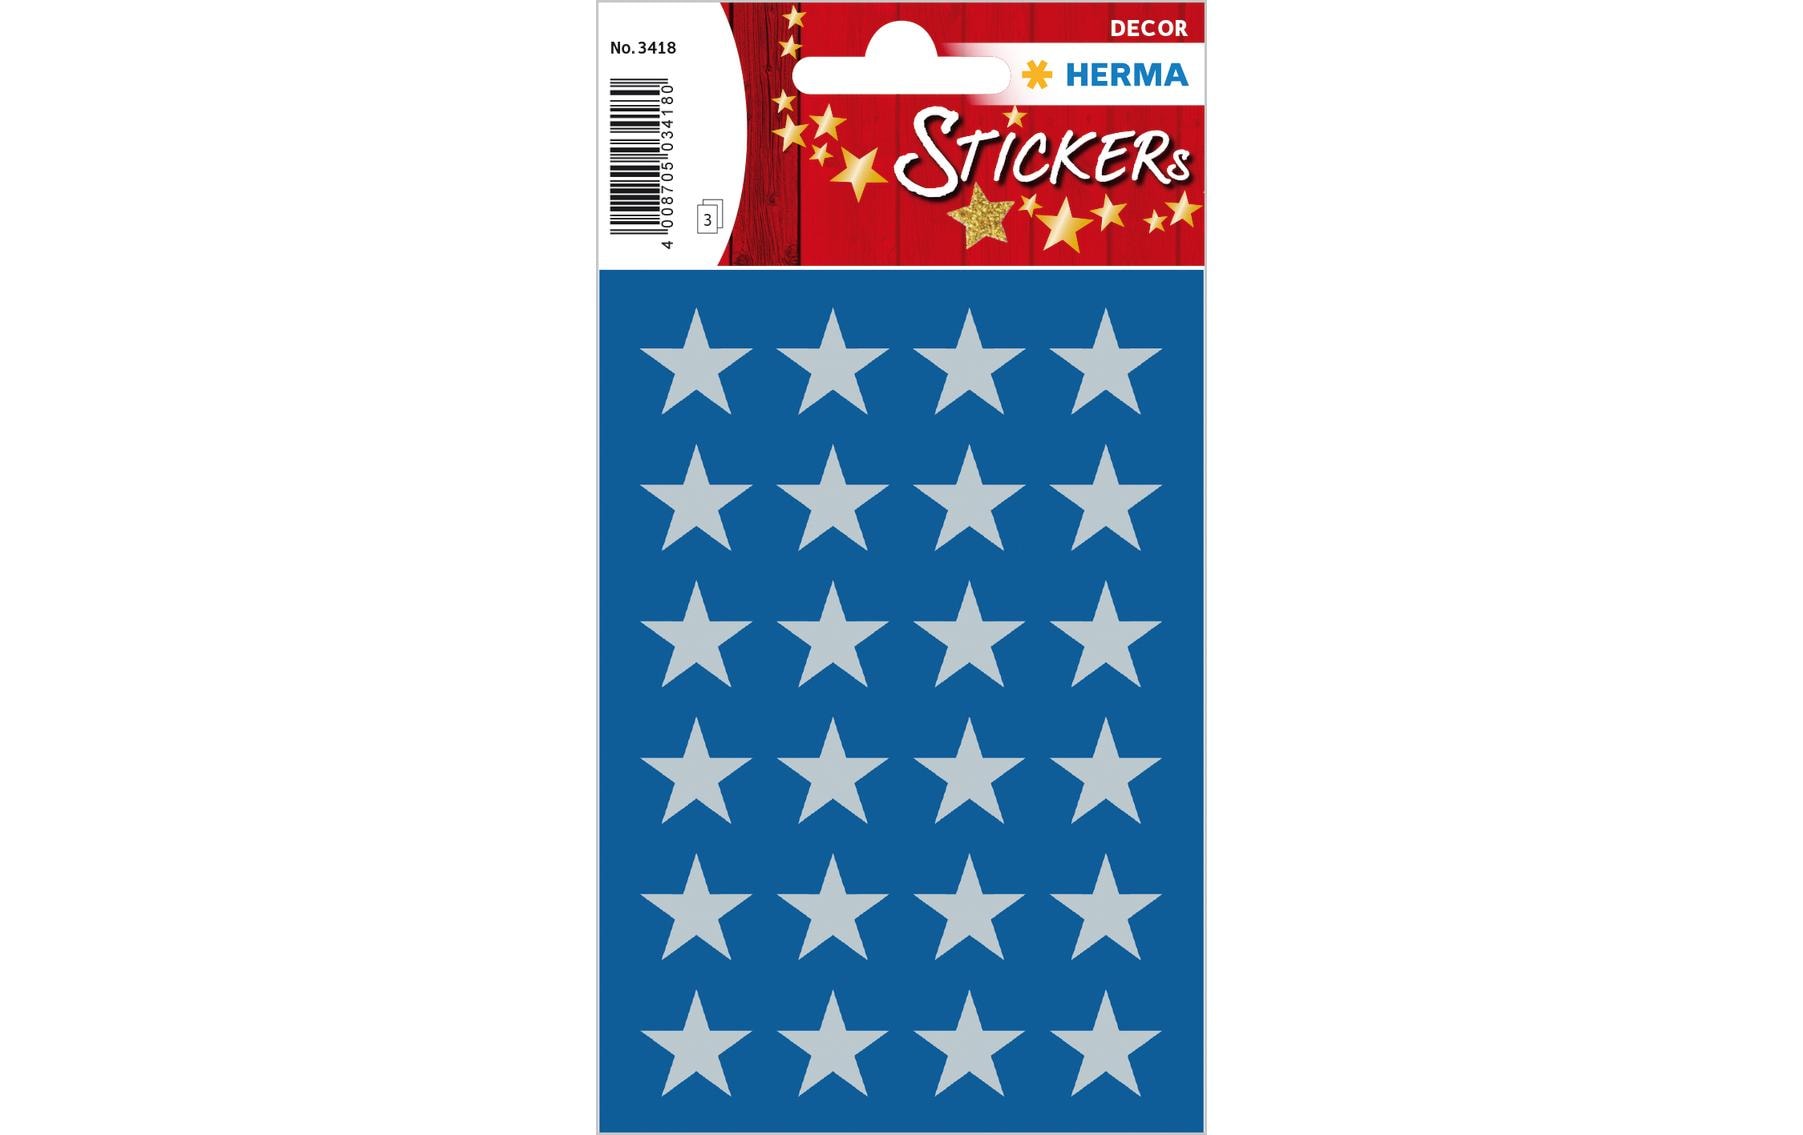 Herma Stickers Weihnachtssticker Sterne 3 Blatt à 72 Sticker, Silber